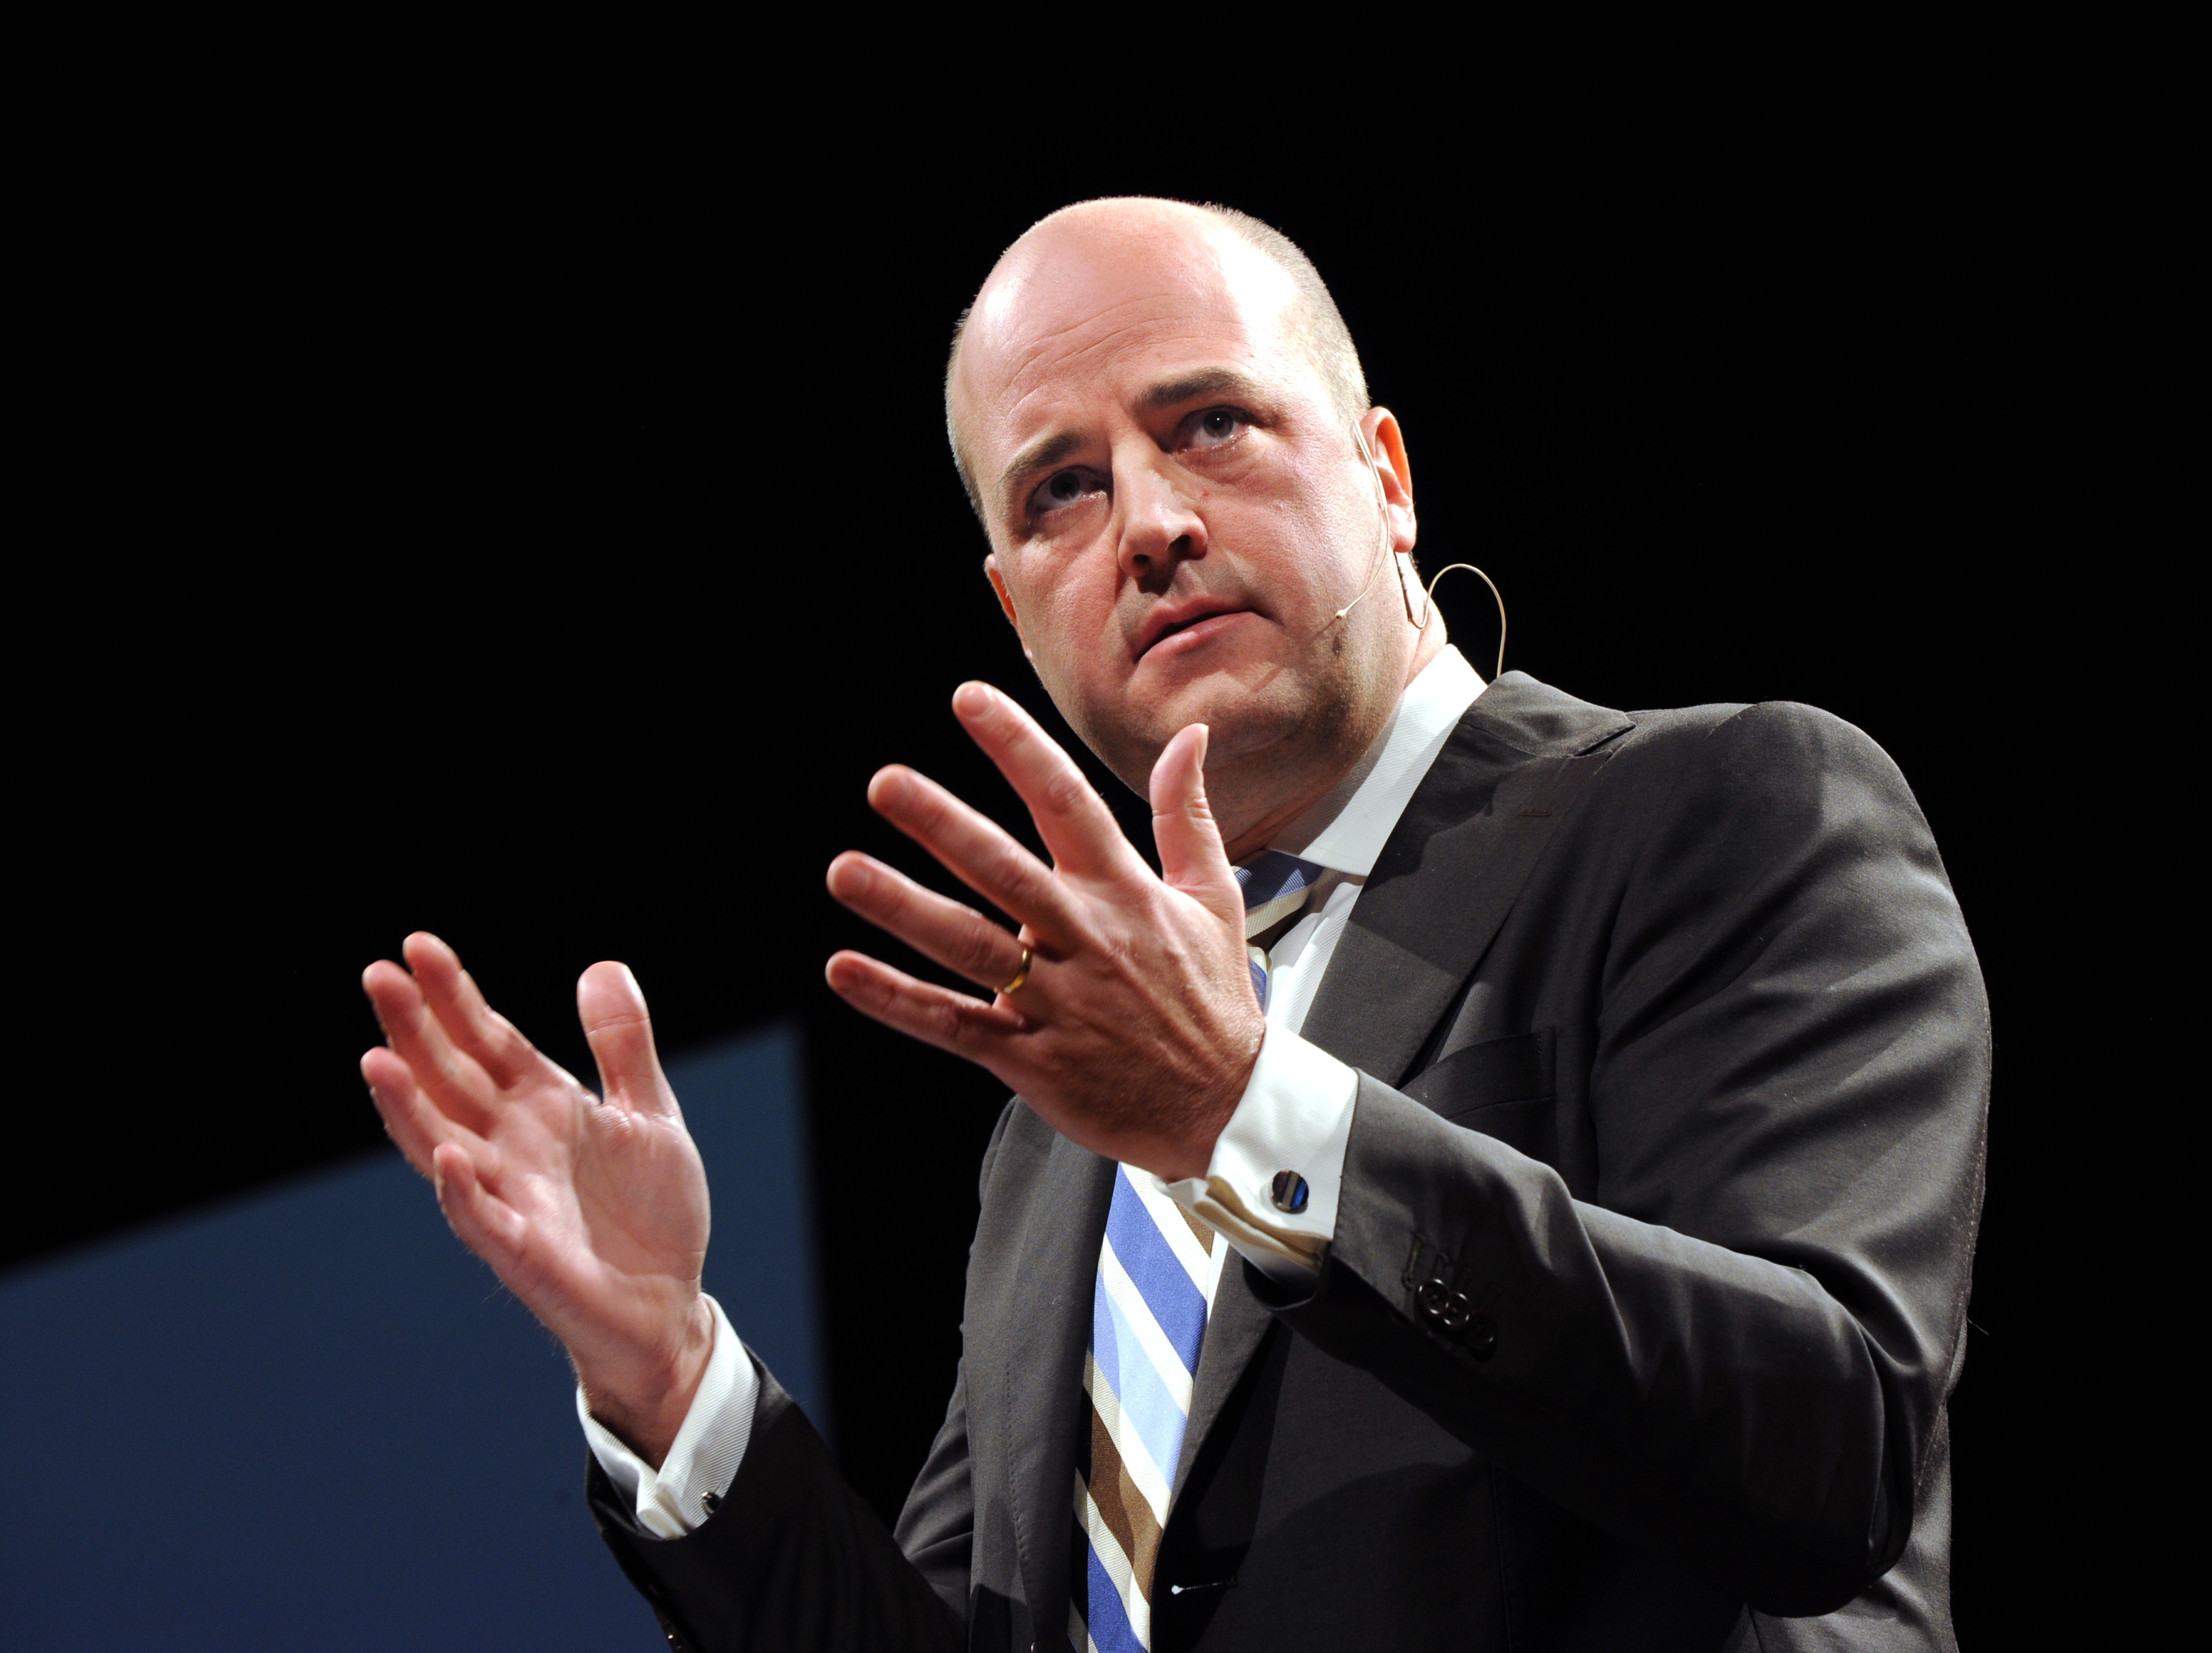 Fredrik Reinfeldt, Stureplan, Anhållen, Fri fot, Utredning, Misshandel, Polisen, Son